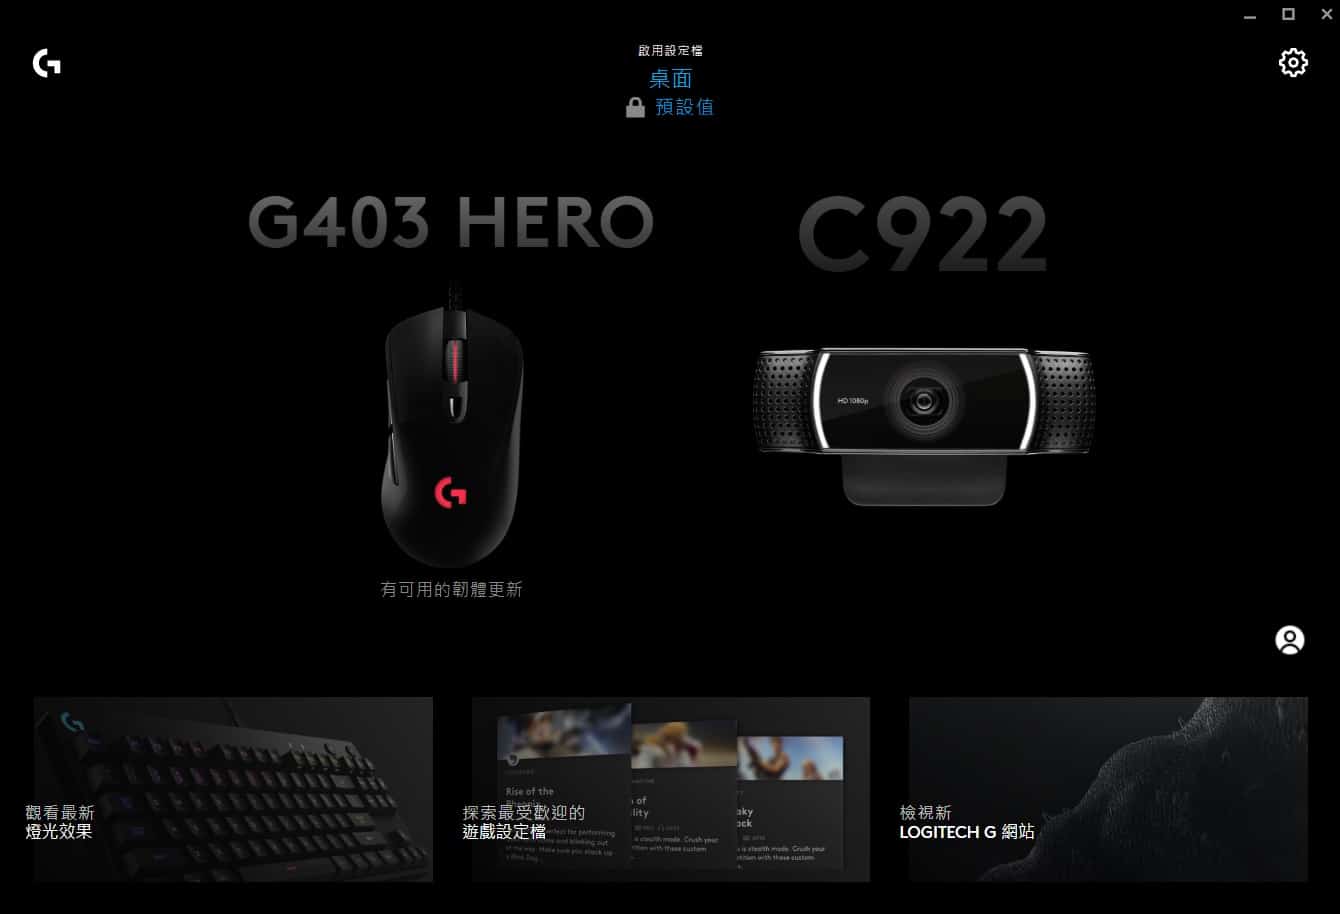 羅技logitech G403 Hero 滑鼠評價 開箱 價格與規格 3c 未來室